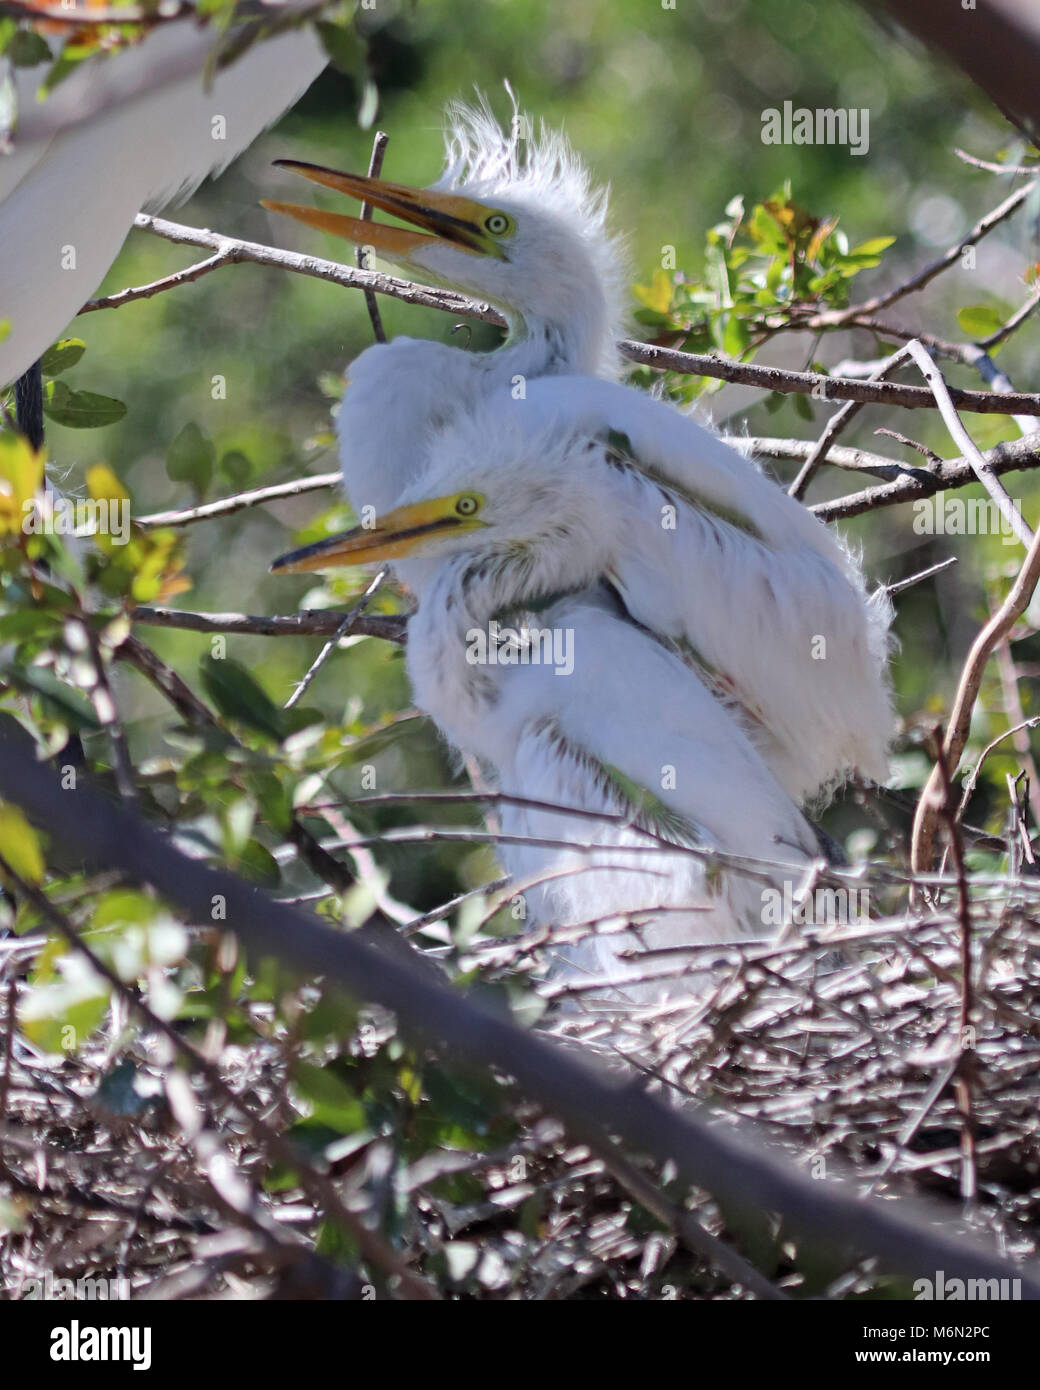 Zwei hungrige White Egret Geschwistern im Nest sind fast Muppet - wie im Look mit Ihren fuzzy Federn und großen langen gelben Schnäbeln. Stockfoto